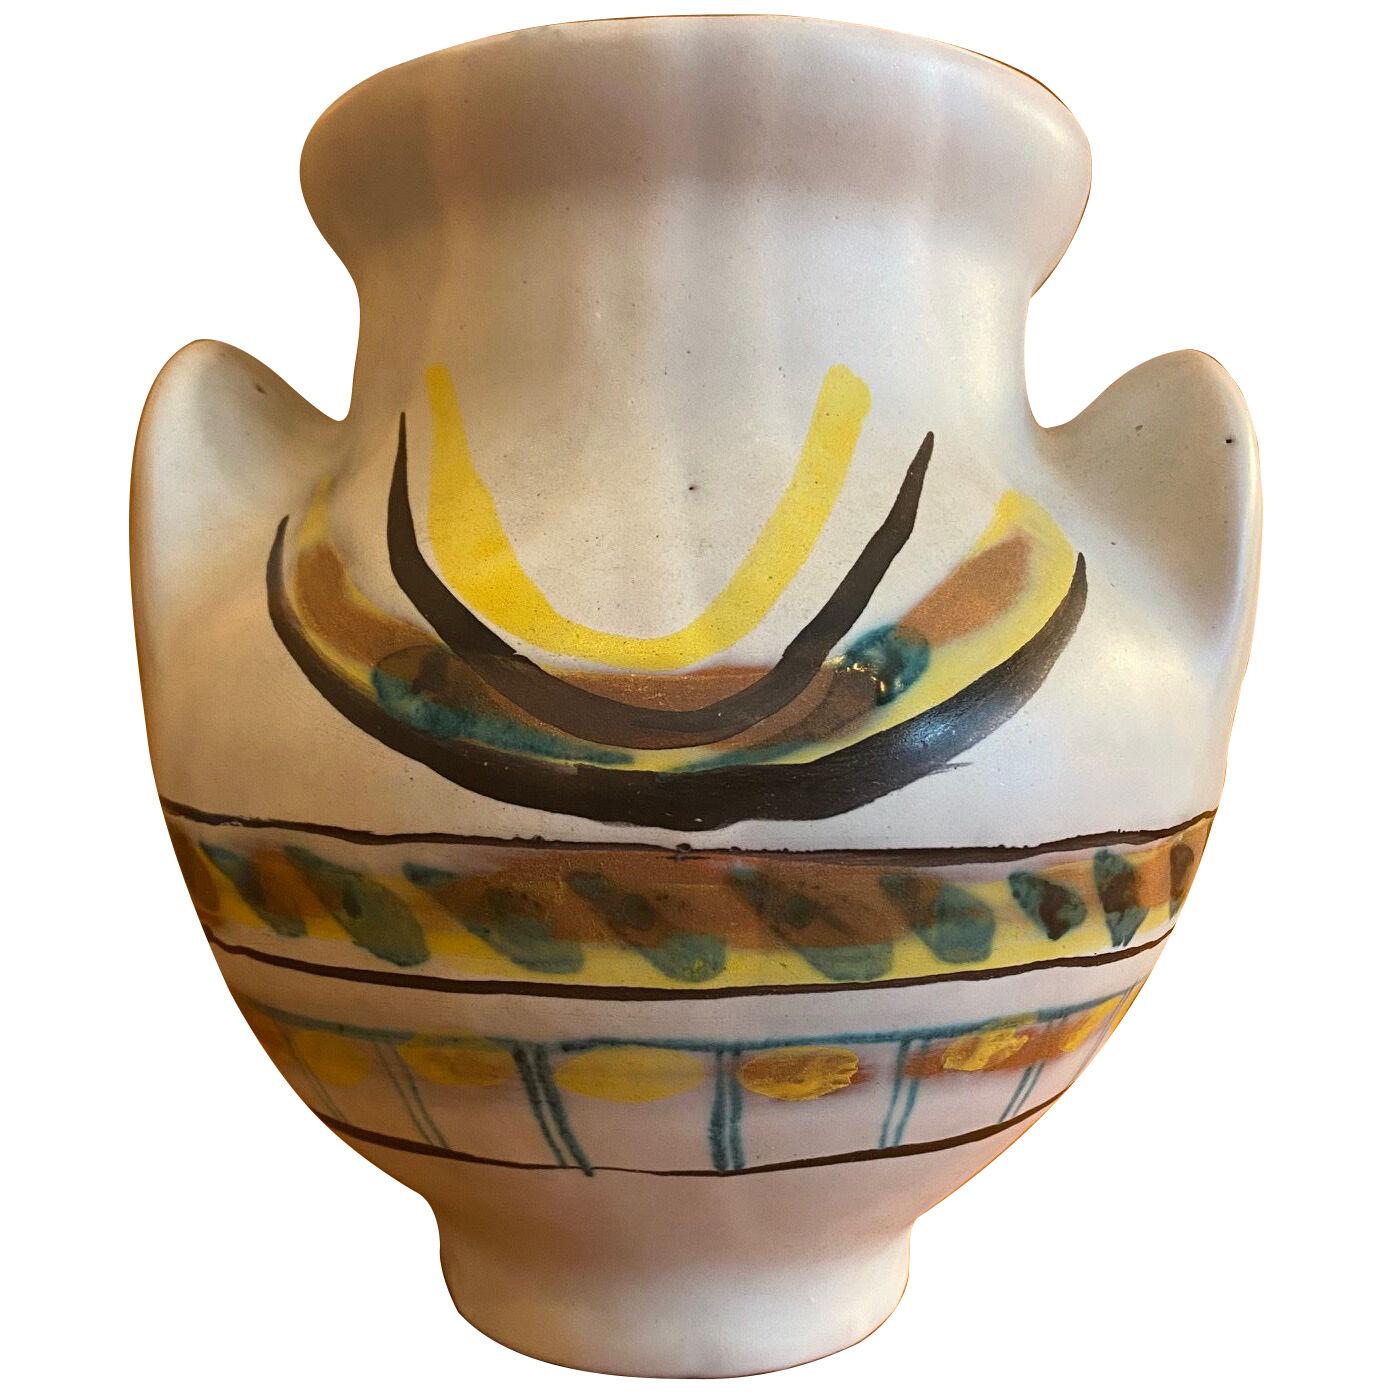 Ceramic Vase "Soleil" by Roger Capron, France, 1950s